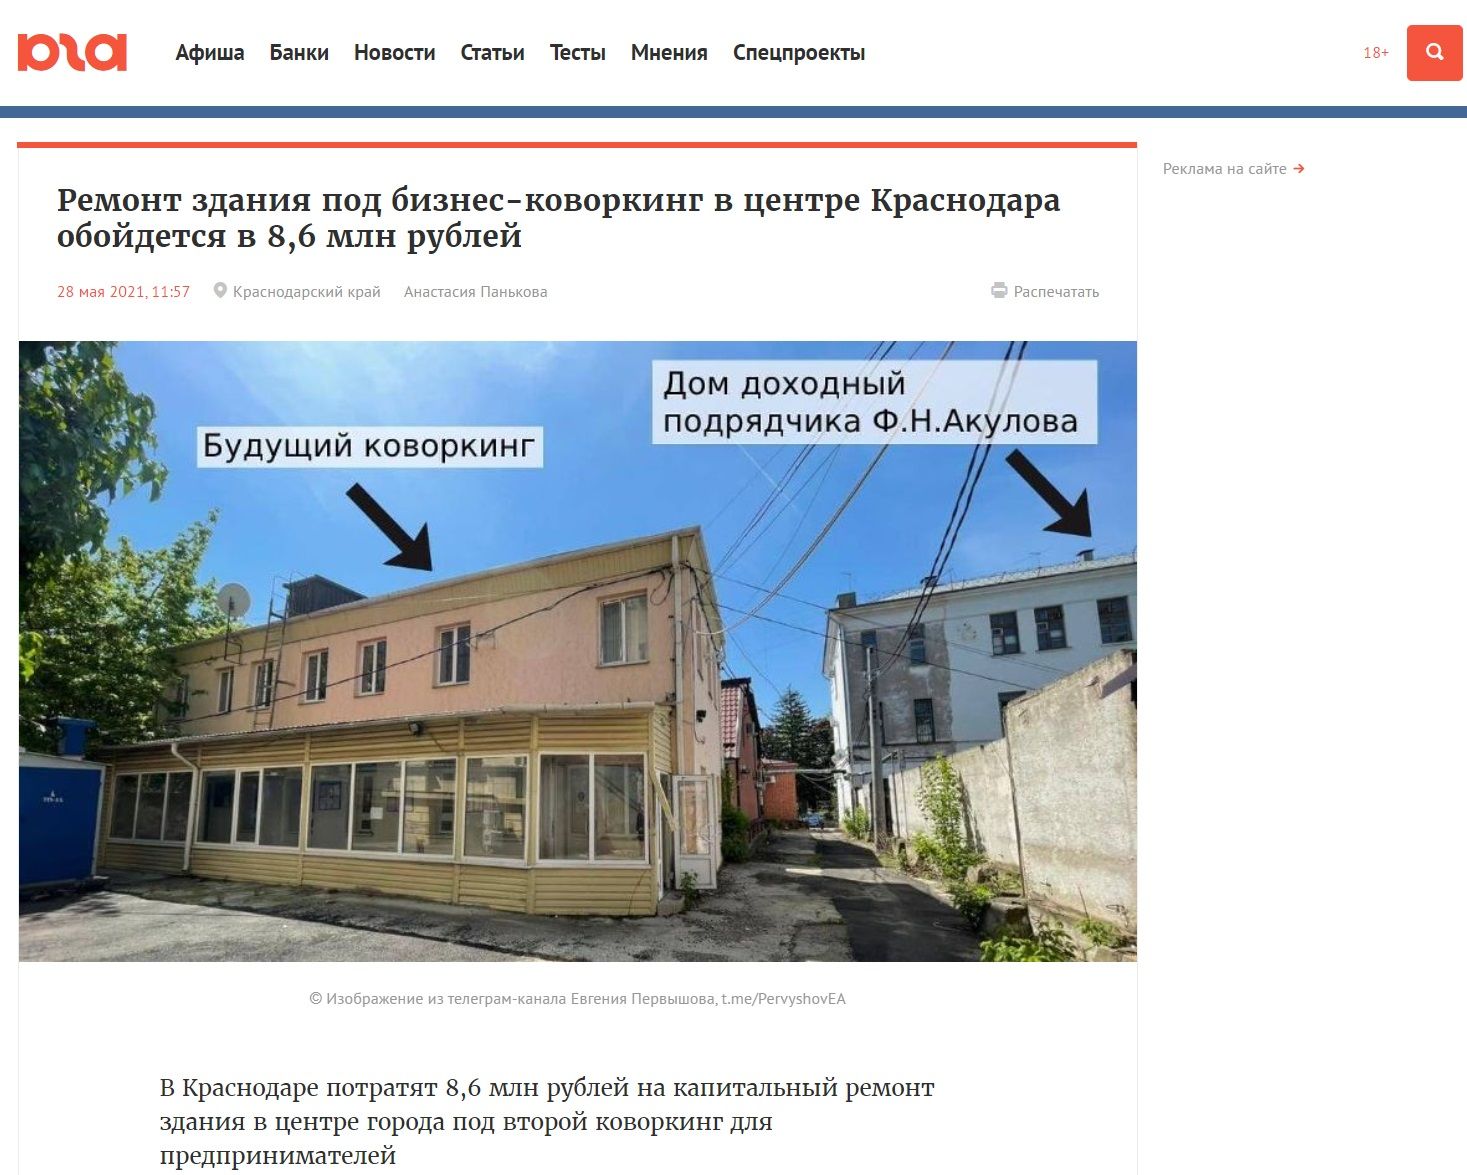  © Скриншот с сайта Юга.ру